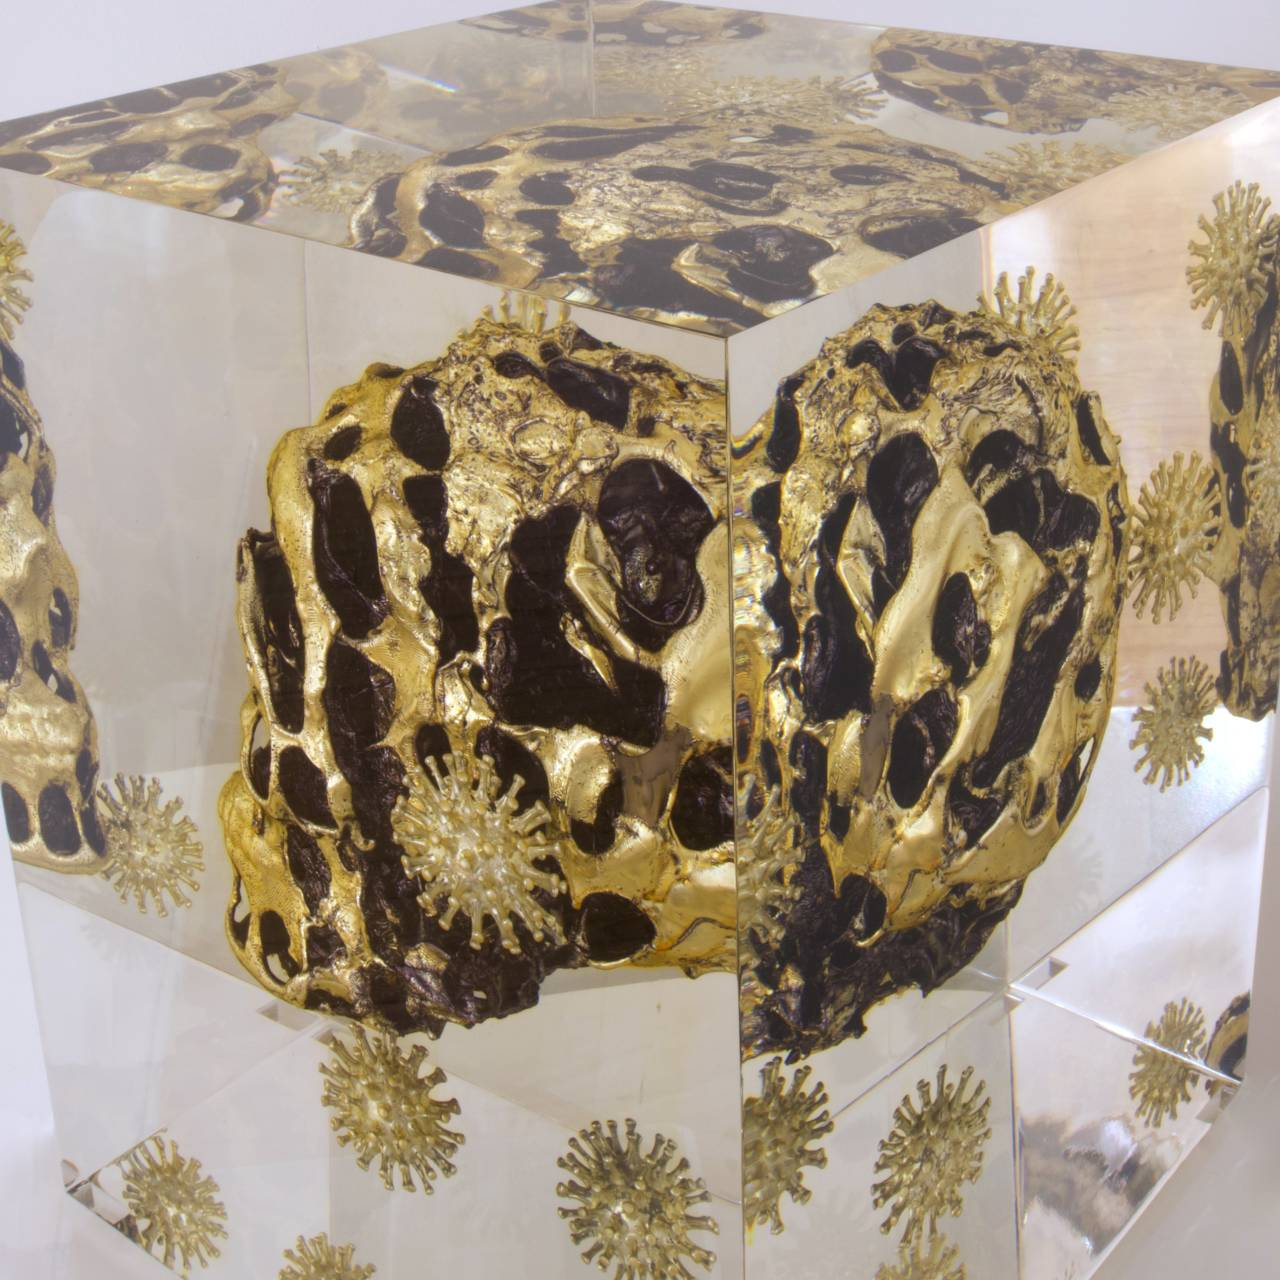 Alexandre NICOLAS, Golden virus, Inclusion cristal synthèse et résine, 33 X 26.5 X 26.5 cm